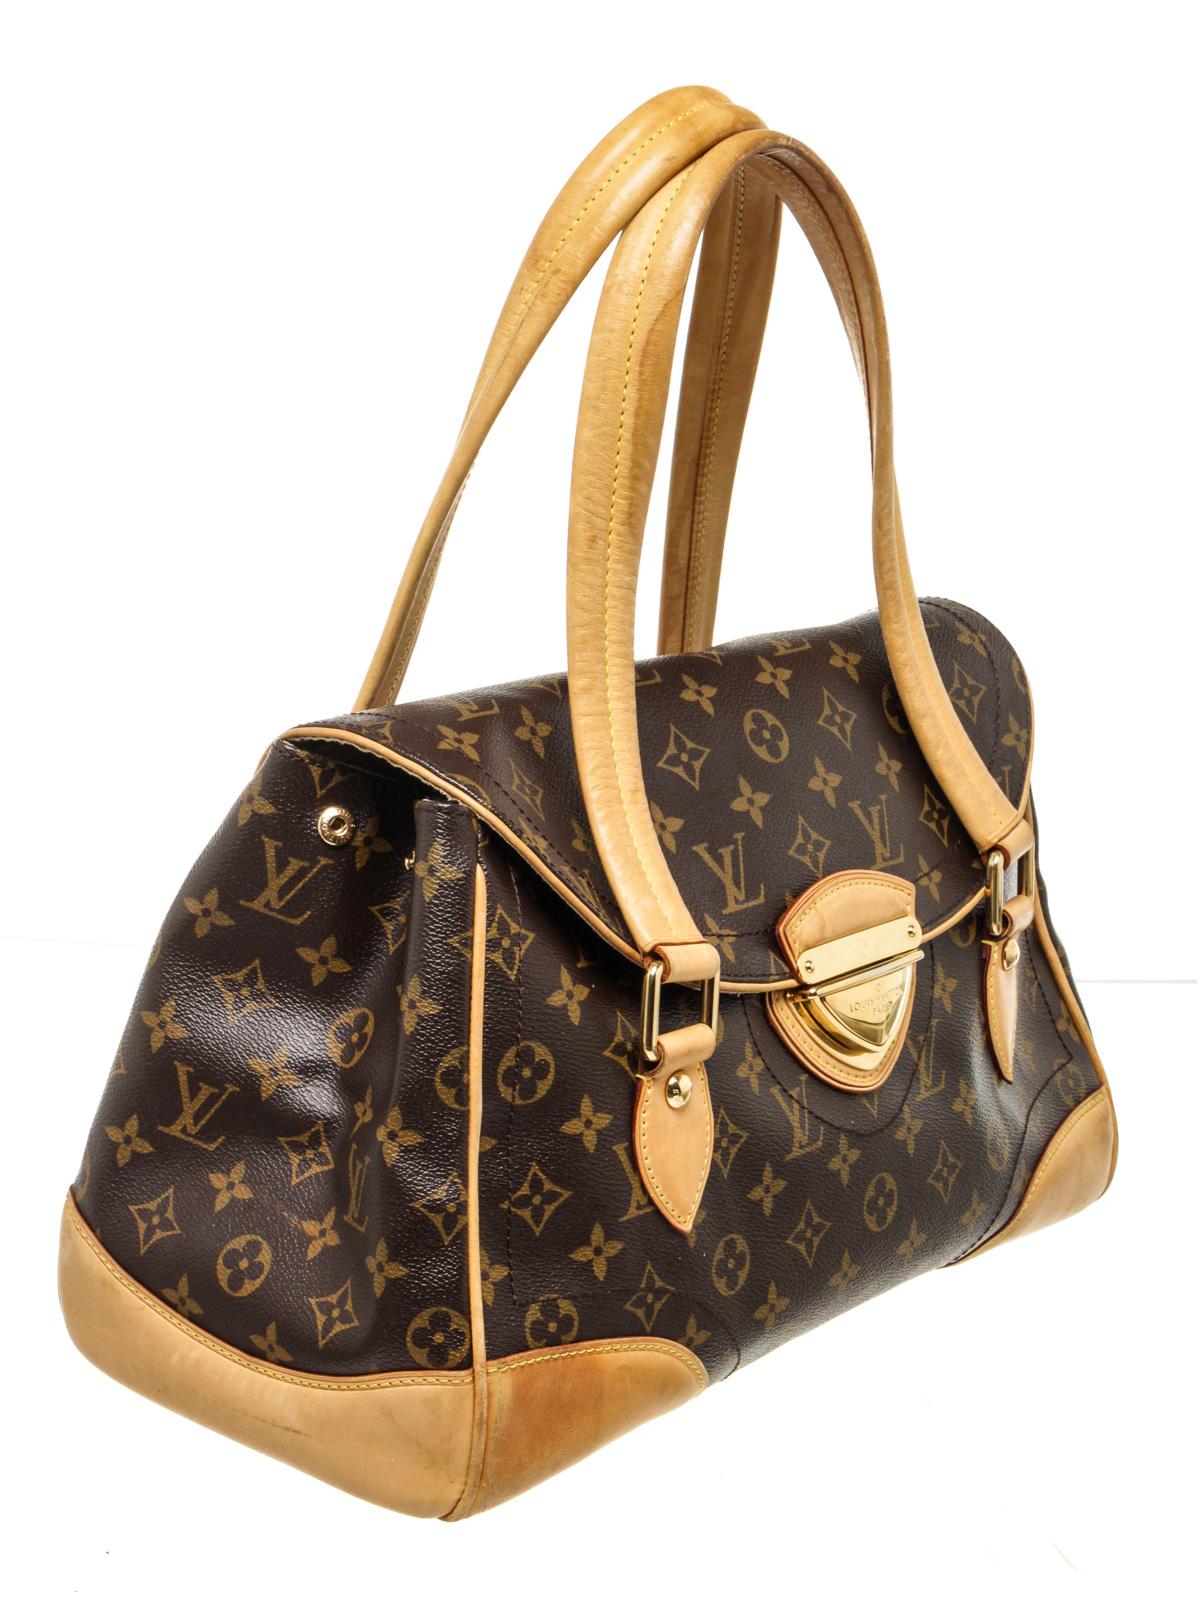 Louis Vuitton Brown Monogram Beverly GMÂ Shoulder Bag with monogram canvas, gold-toneÂ hardware, tan vachetta leather trim,Â top handle, leather shoulderÂ strap, and zipperÂ closure.

47409MSC